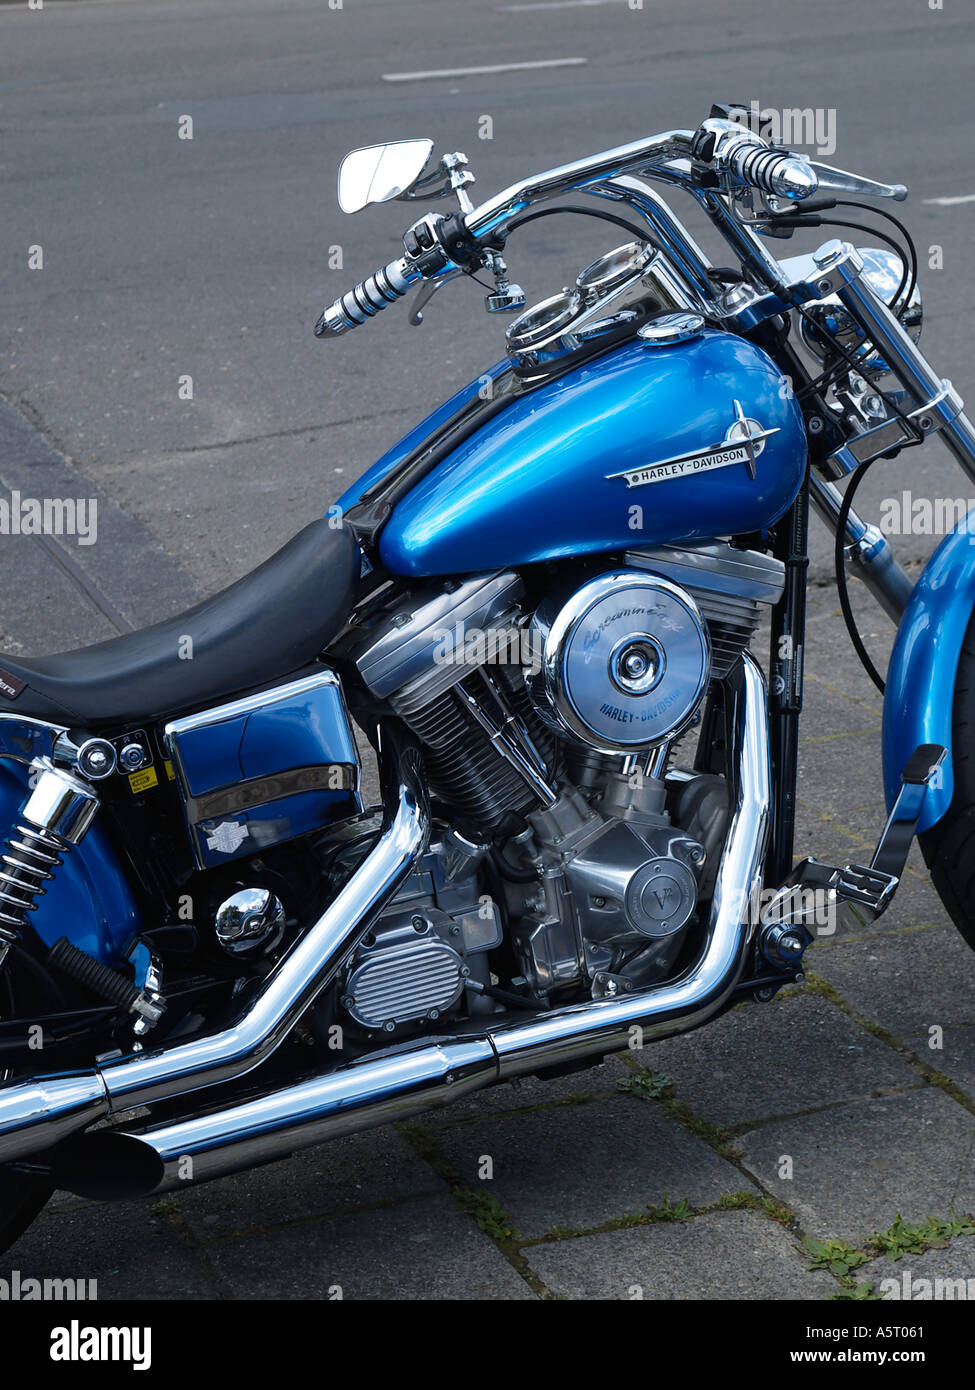 Azul eléctrico, Harley Davidson custom chopper estacionado a la vera del camino Foto de stock